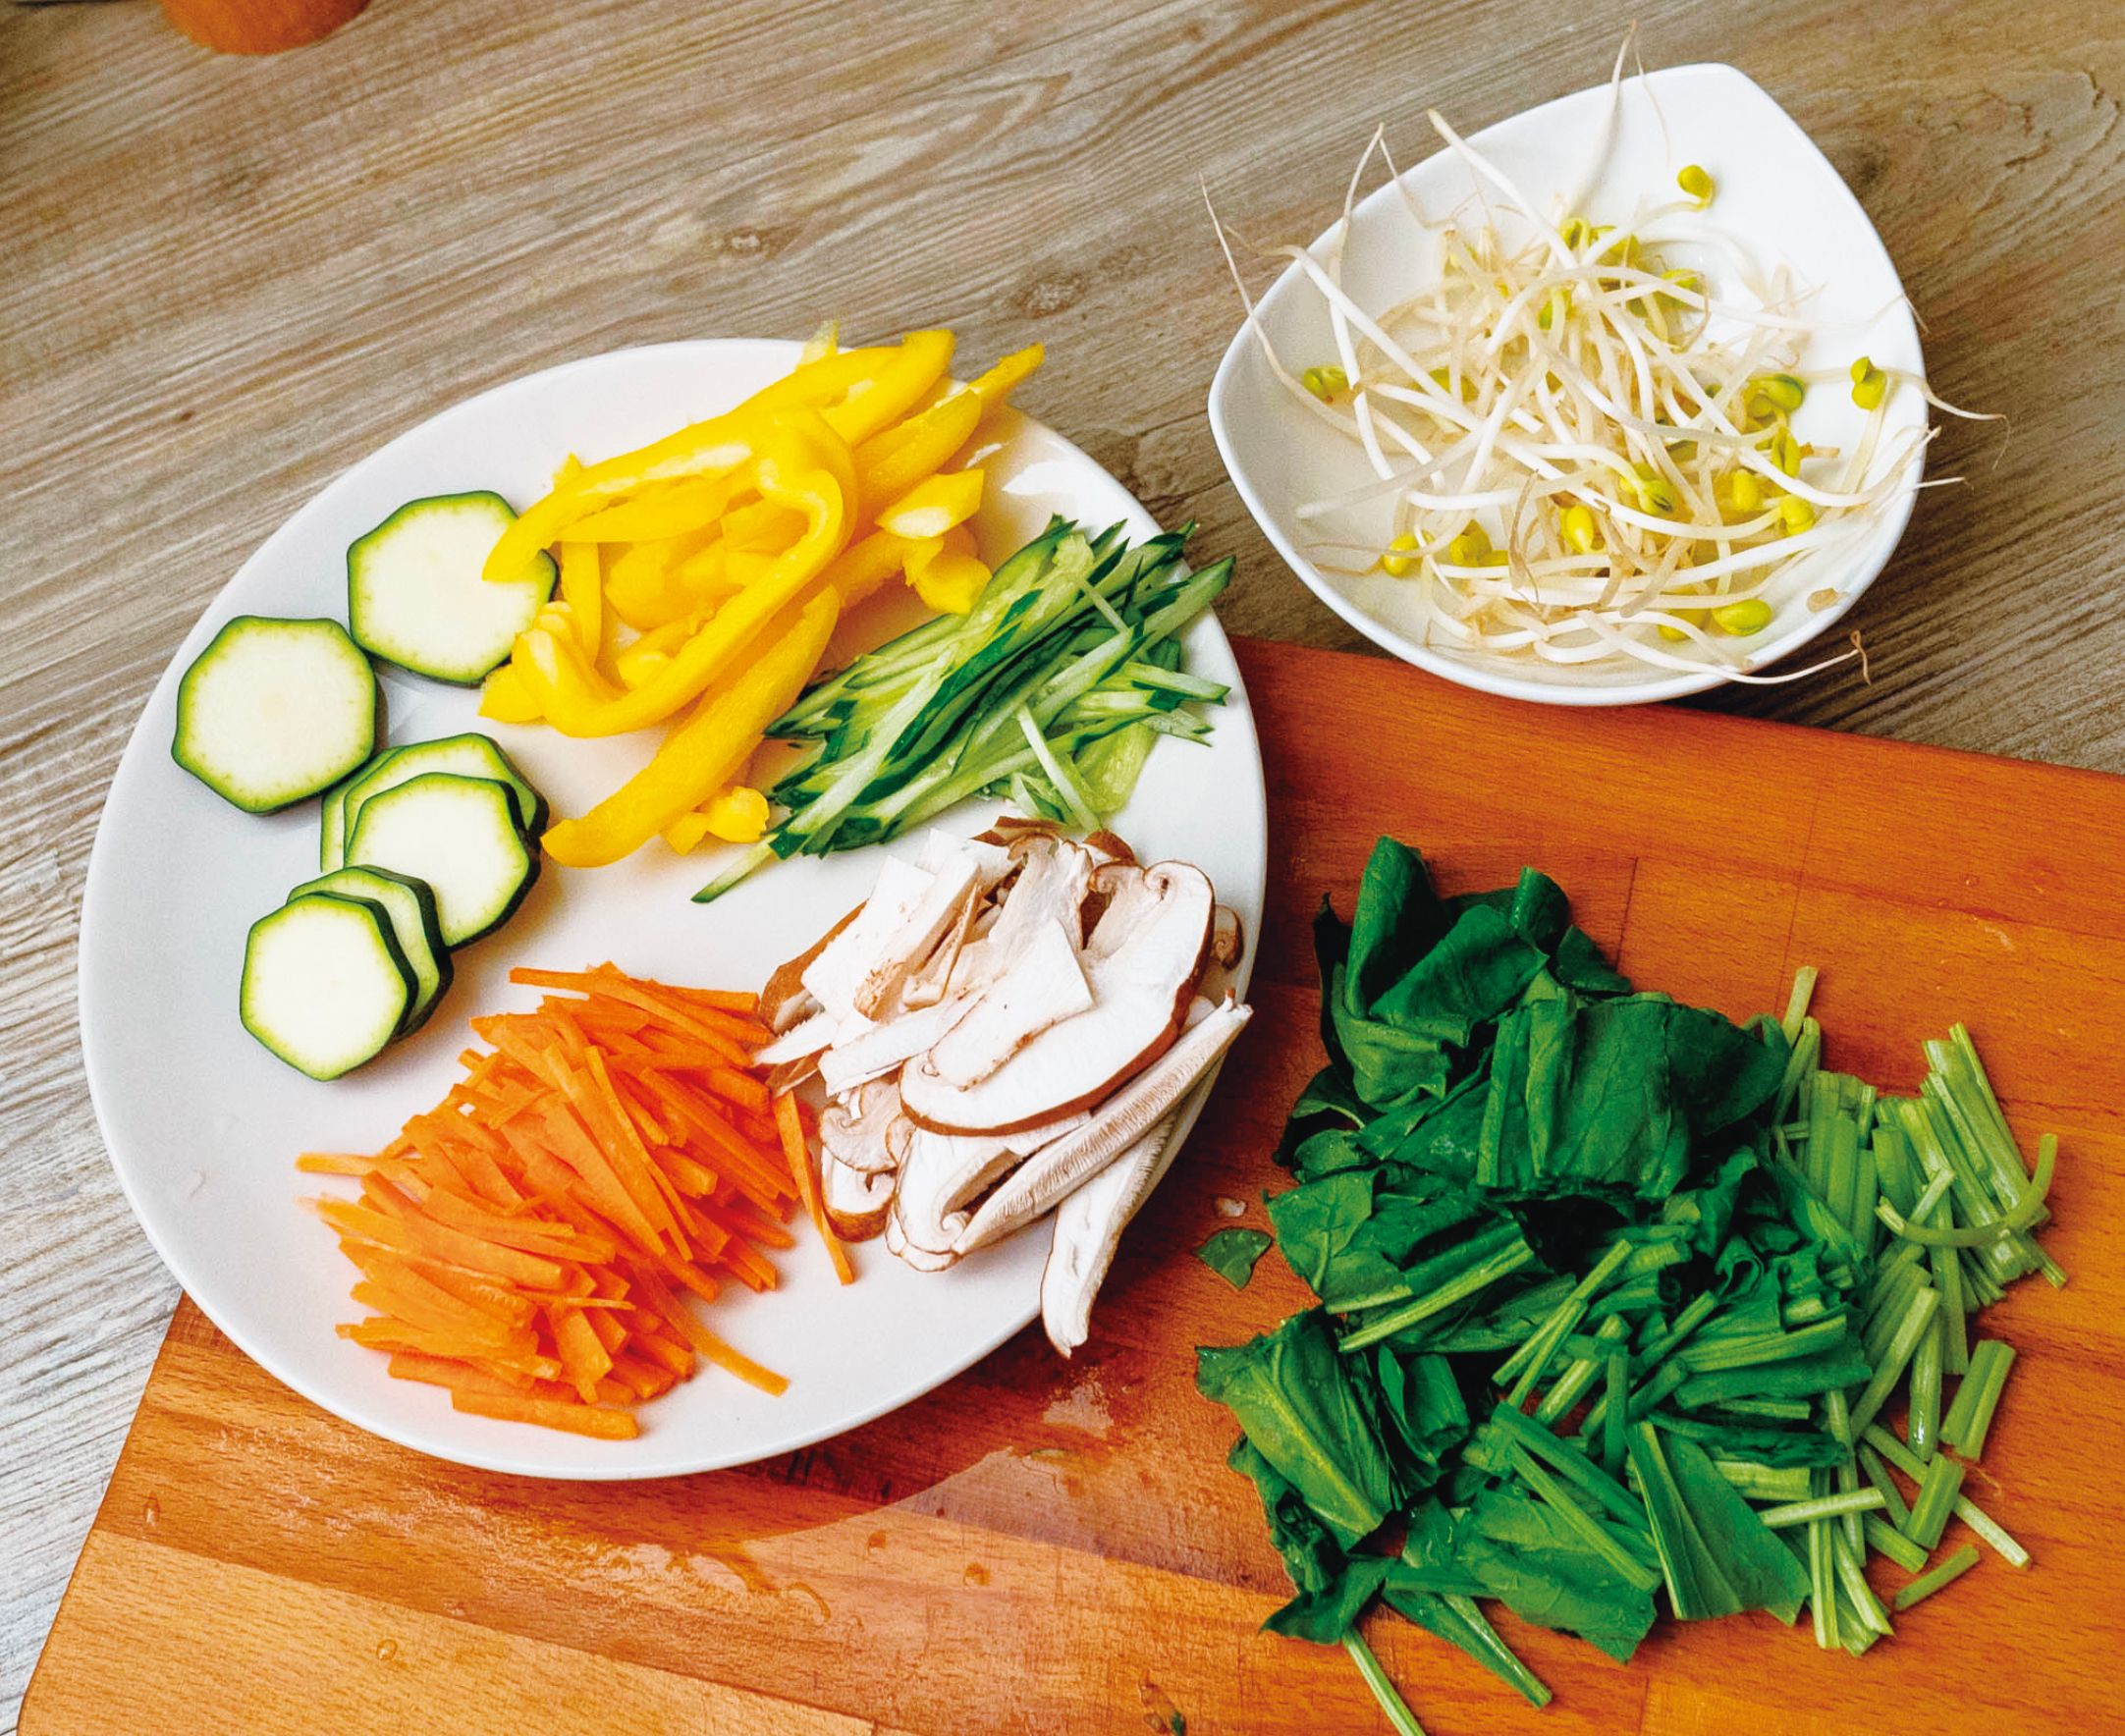 拌飯的蔬菜可以依照個人喜好選擇不同的蔬菜。